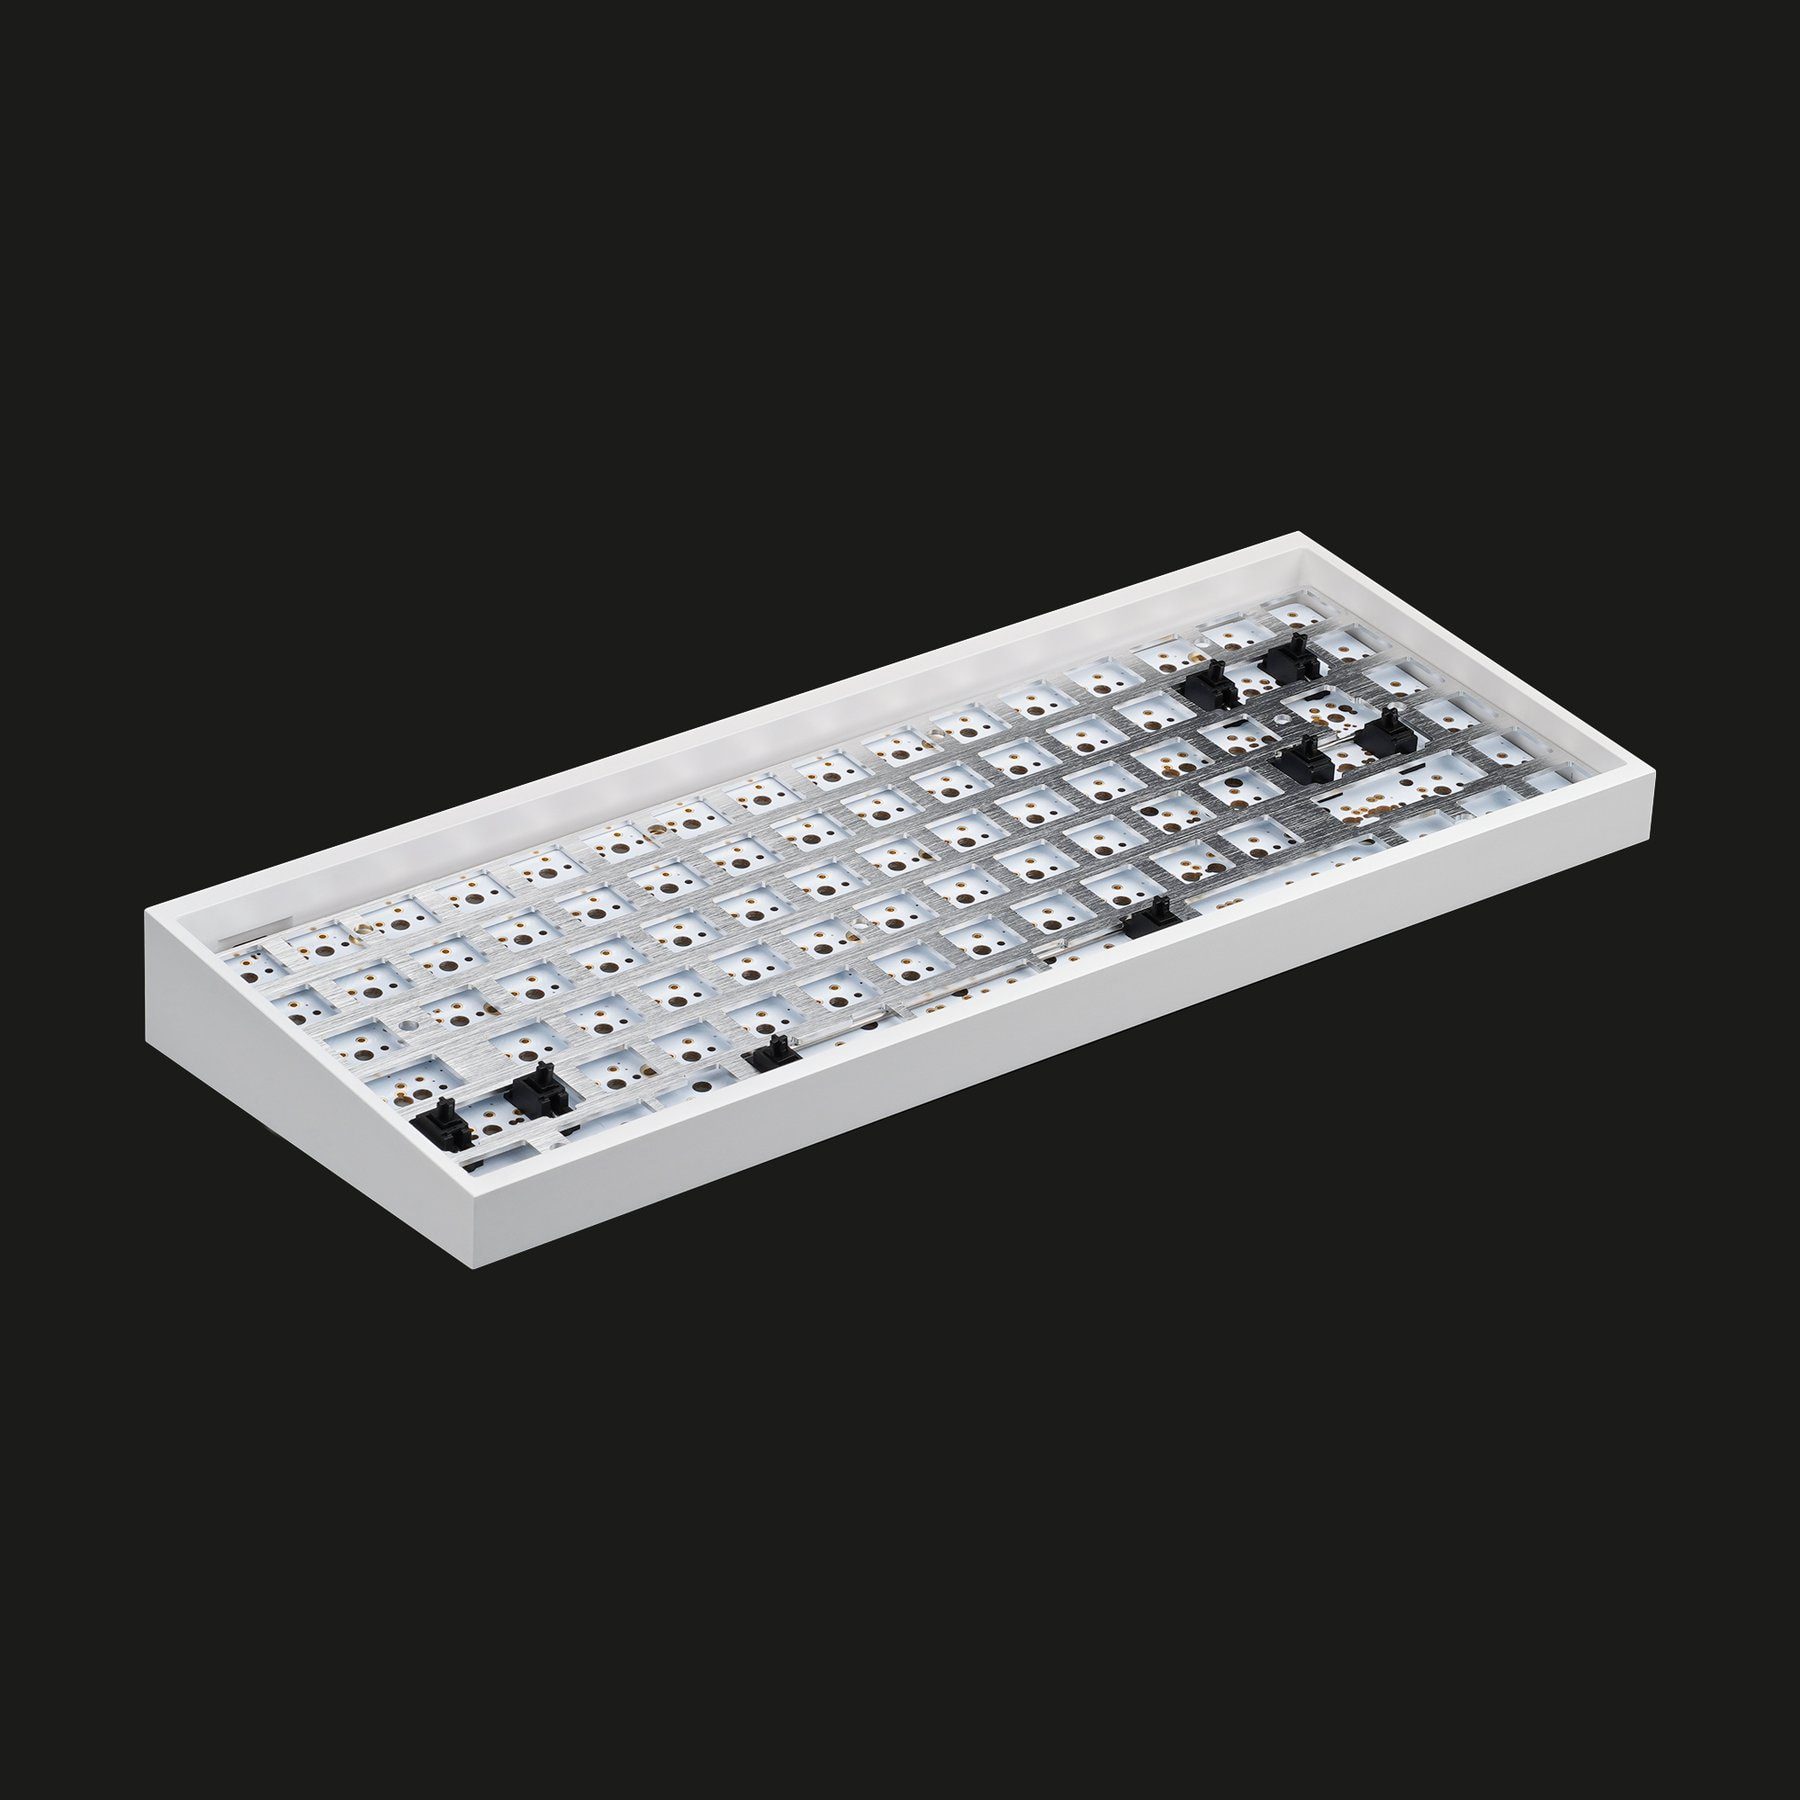 Tofu84 Hot-swap RGB 75% Mechanical Keyboard Diy Kit